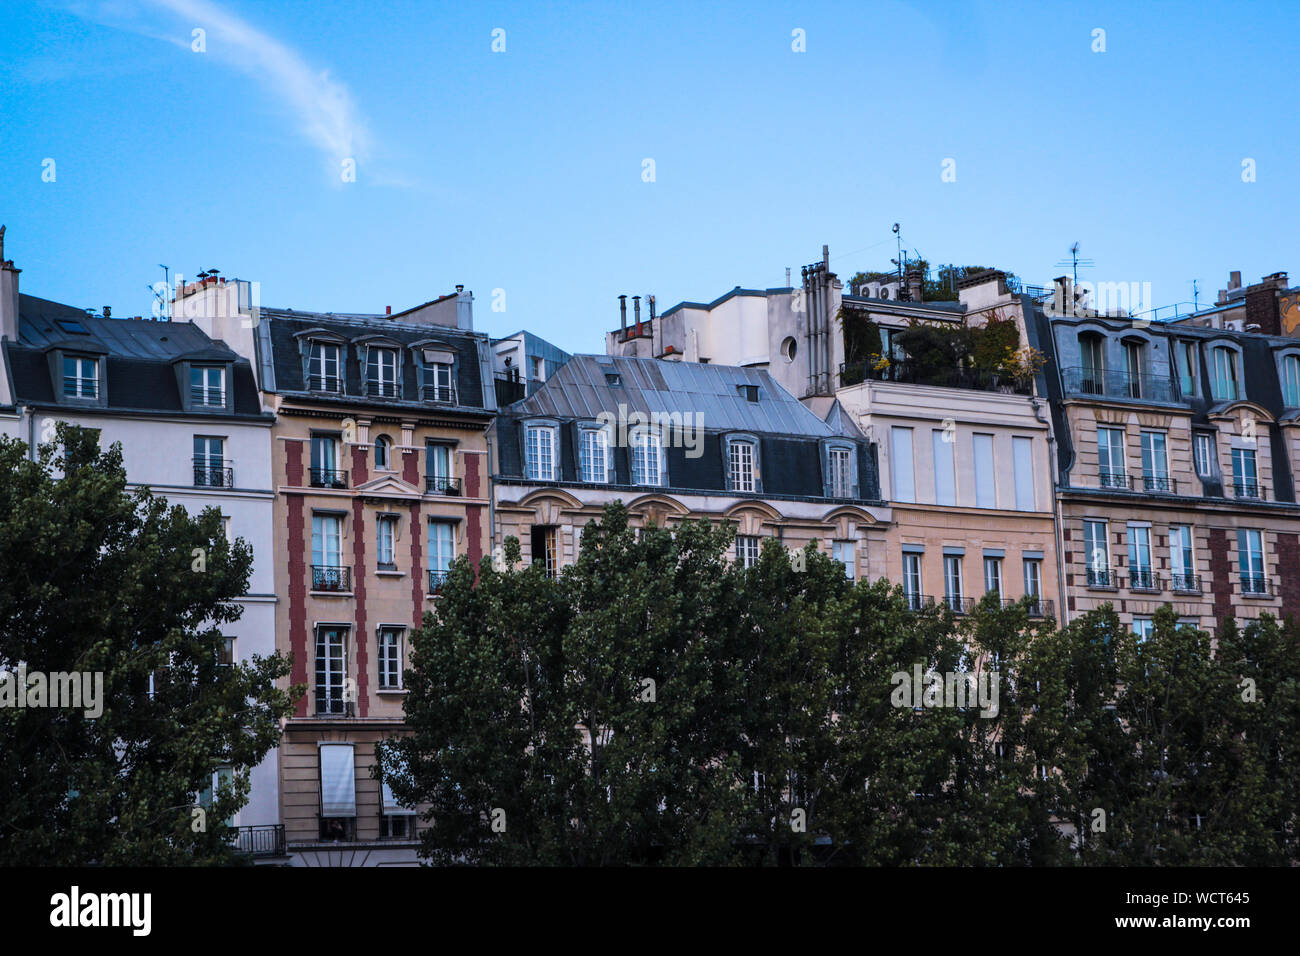 Ver Fornt de edificios históricos en la ciudad contra el cielo azul Foto de stock